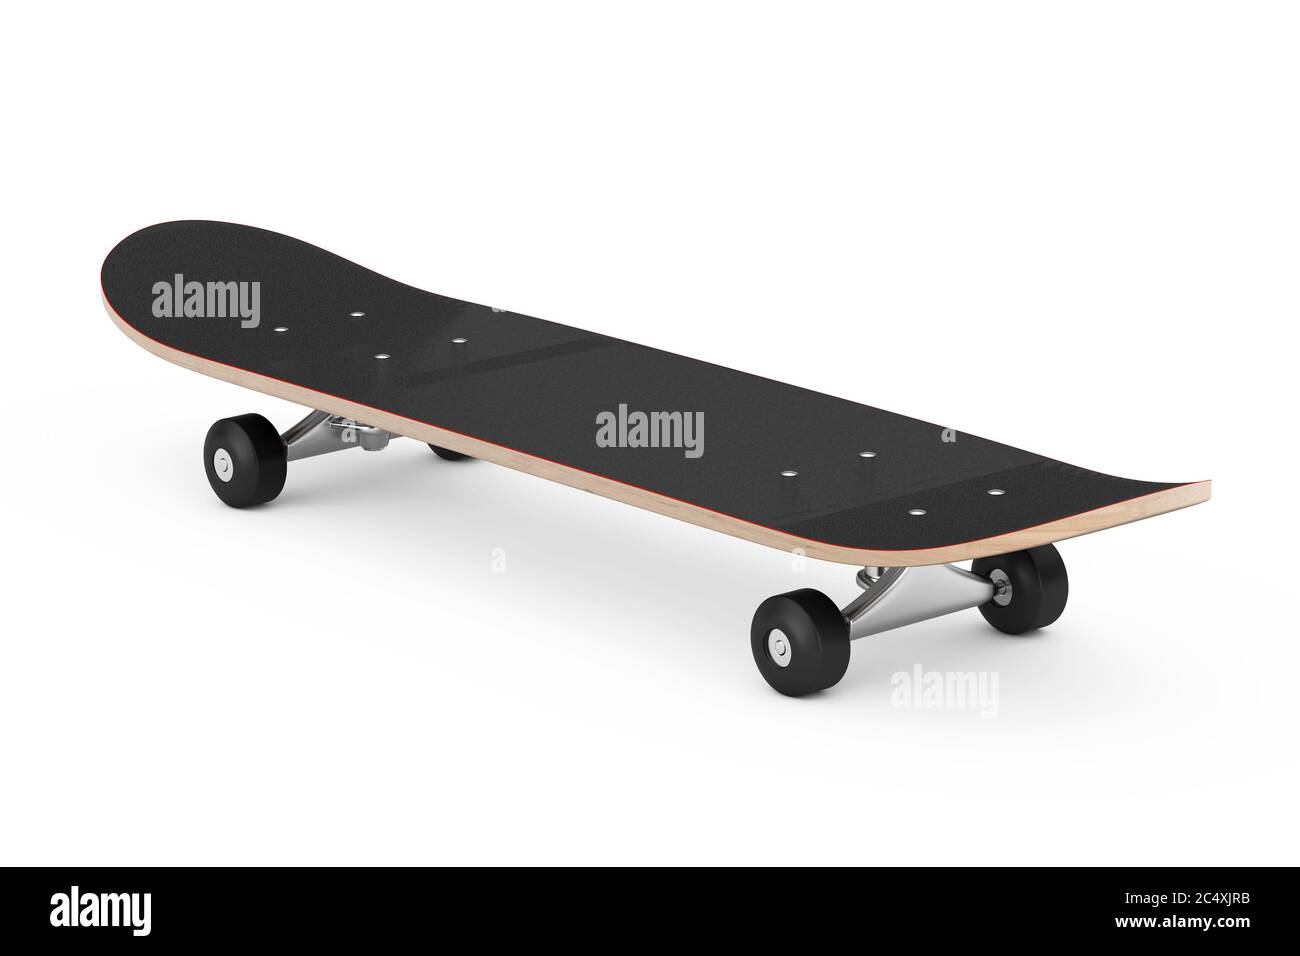 Modernes Skateboard Deck aus Holz auf weißem Hintergrund. 3d-Rendering  Stockfotografie - Alamy